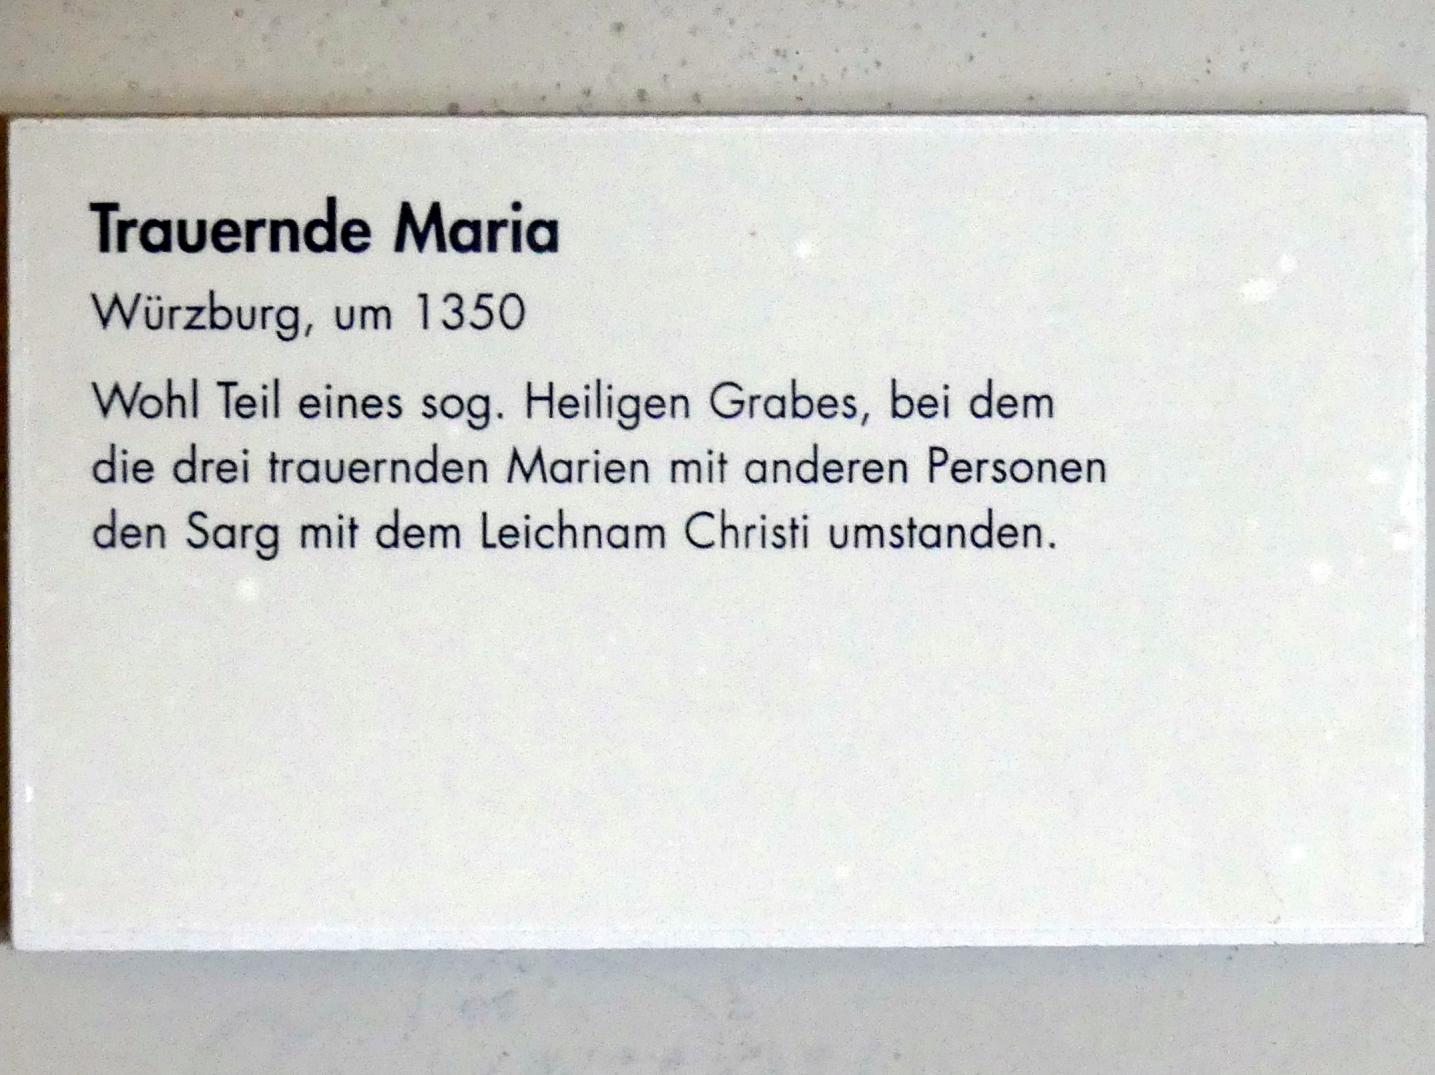 Trauernde Maria, Würzburg, Museum für Franken (ehem. Mainfränkisches Museum), Ritter-Saal, um 1350, Bild 2/2